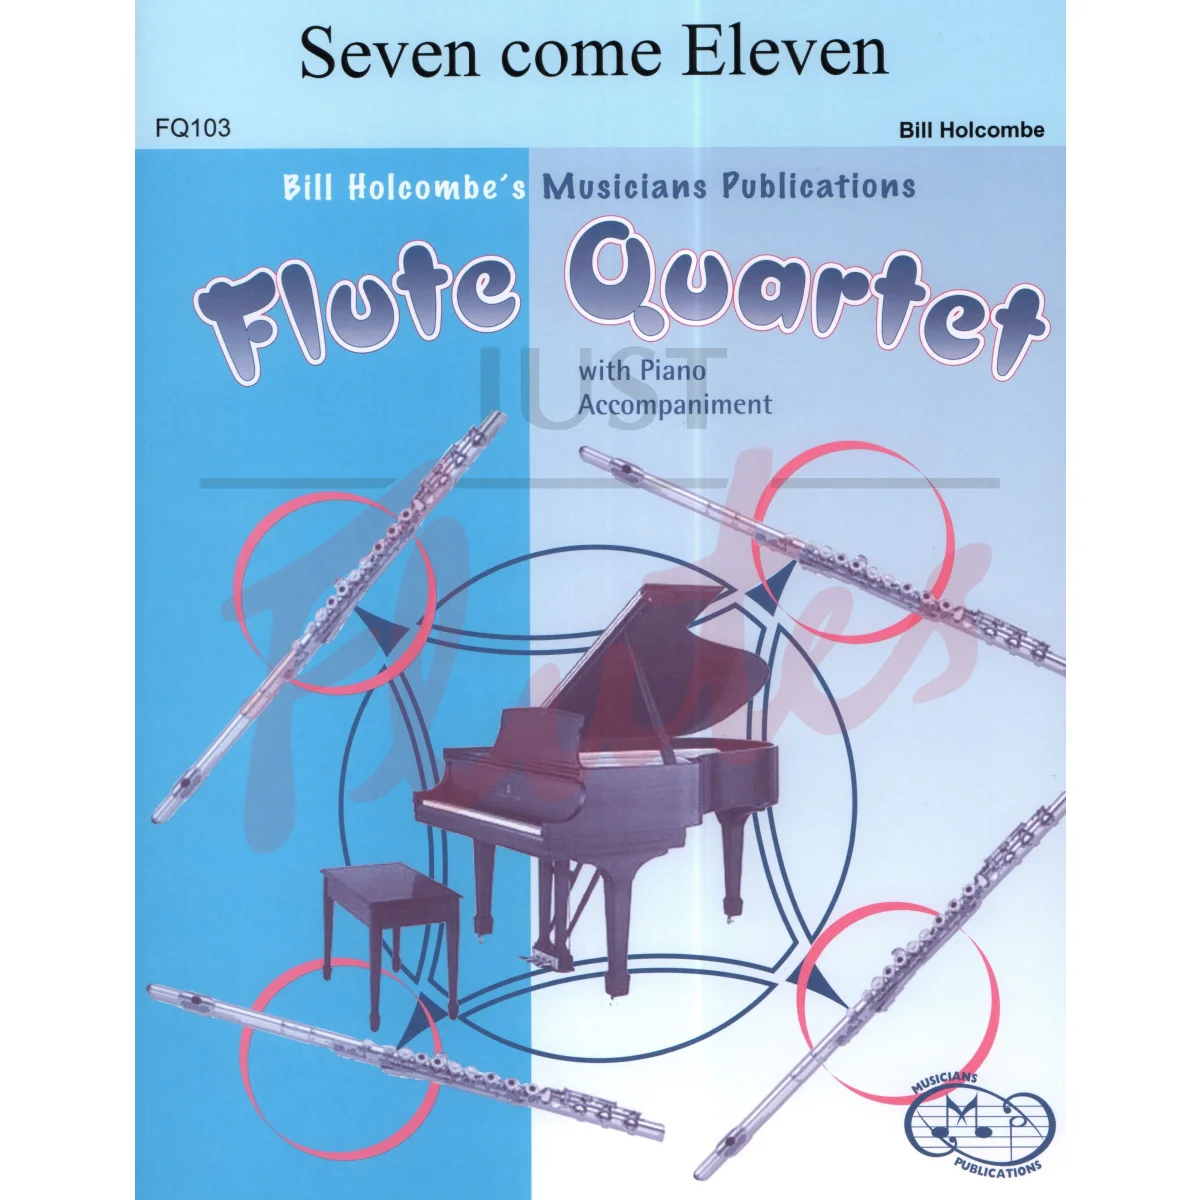 Seven Come Eleven for Flute Quartet and Piano